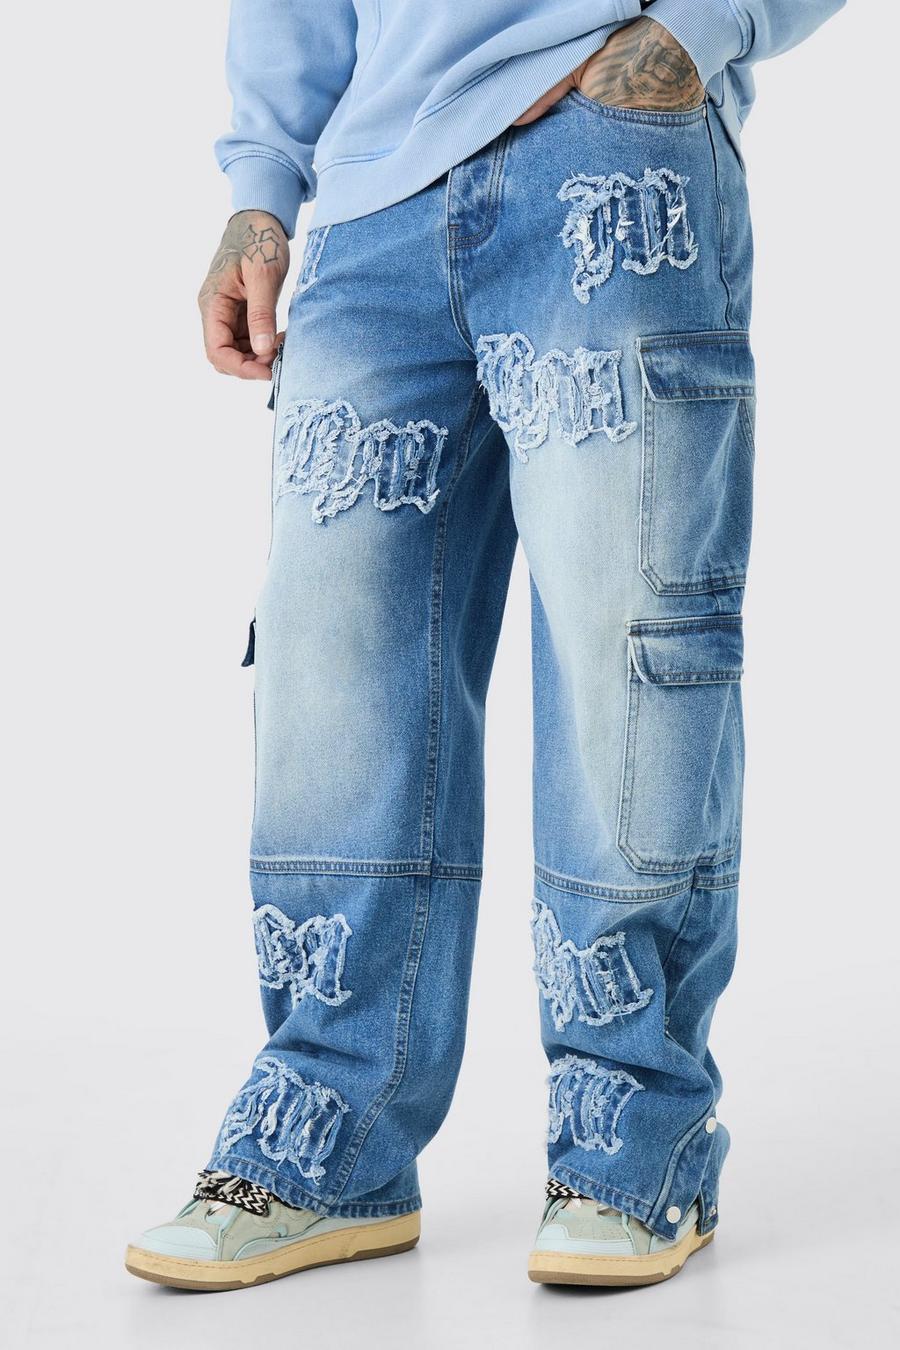 Jeans Tall extra comodi in denim rigido con applique BM e tasche Cargo, Light blue